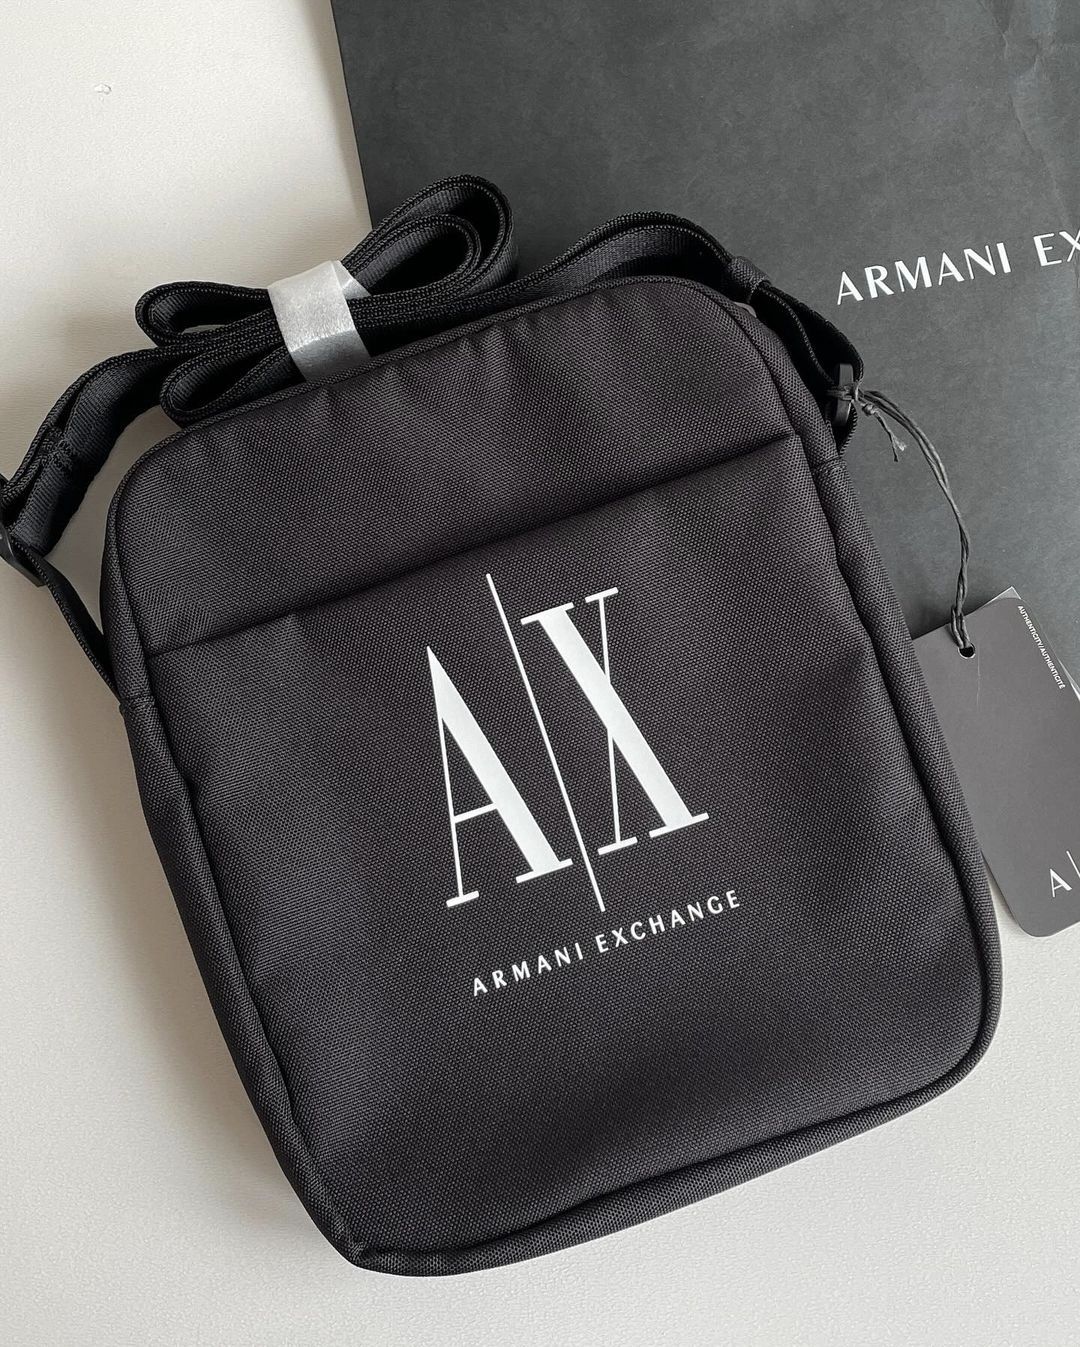 Мужская сумка/барсетка из новой коллекции бренда Armani Exchange